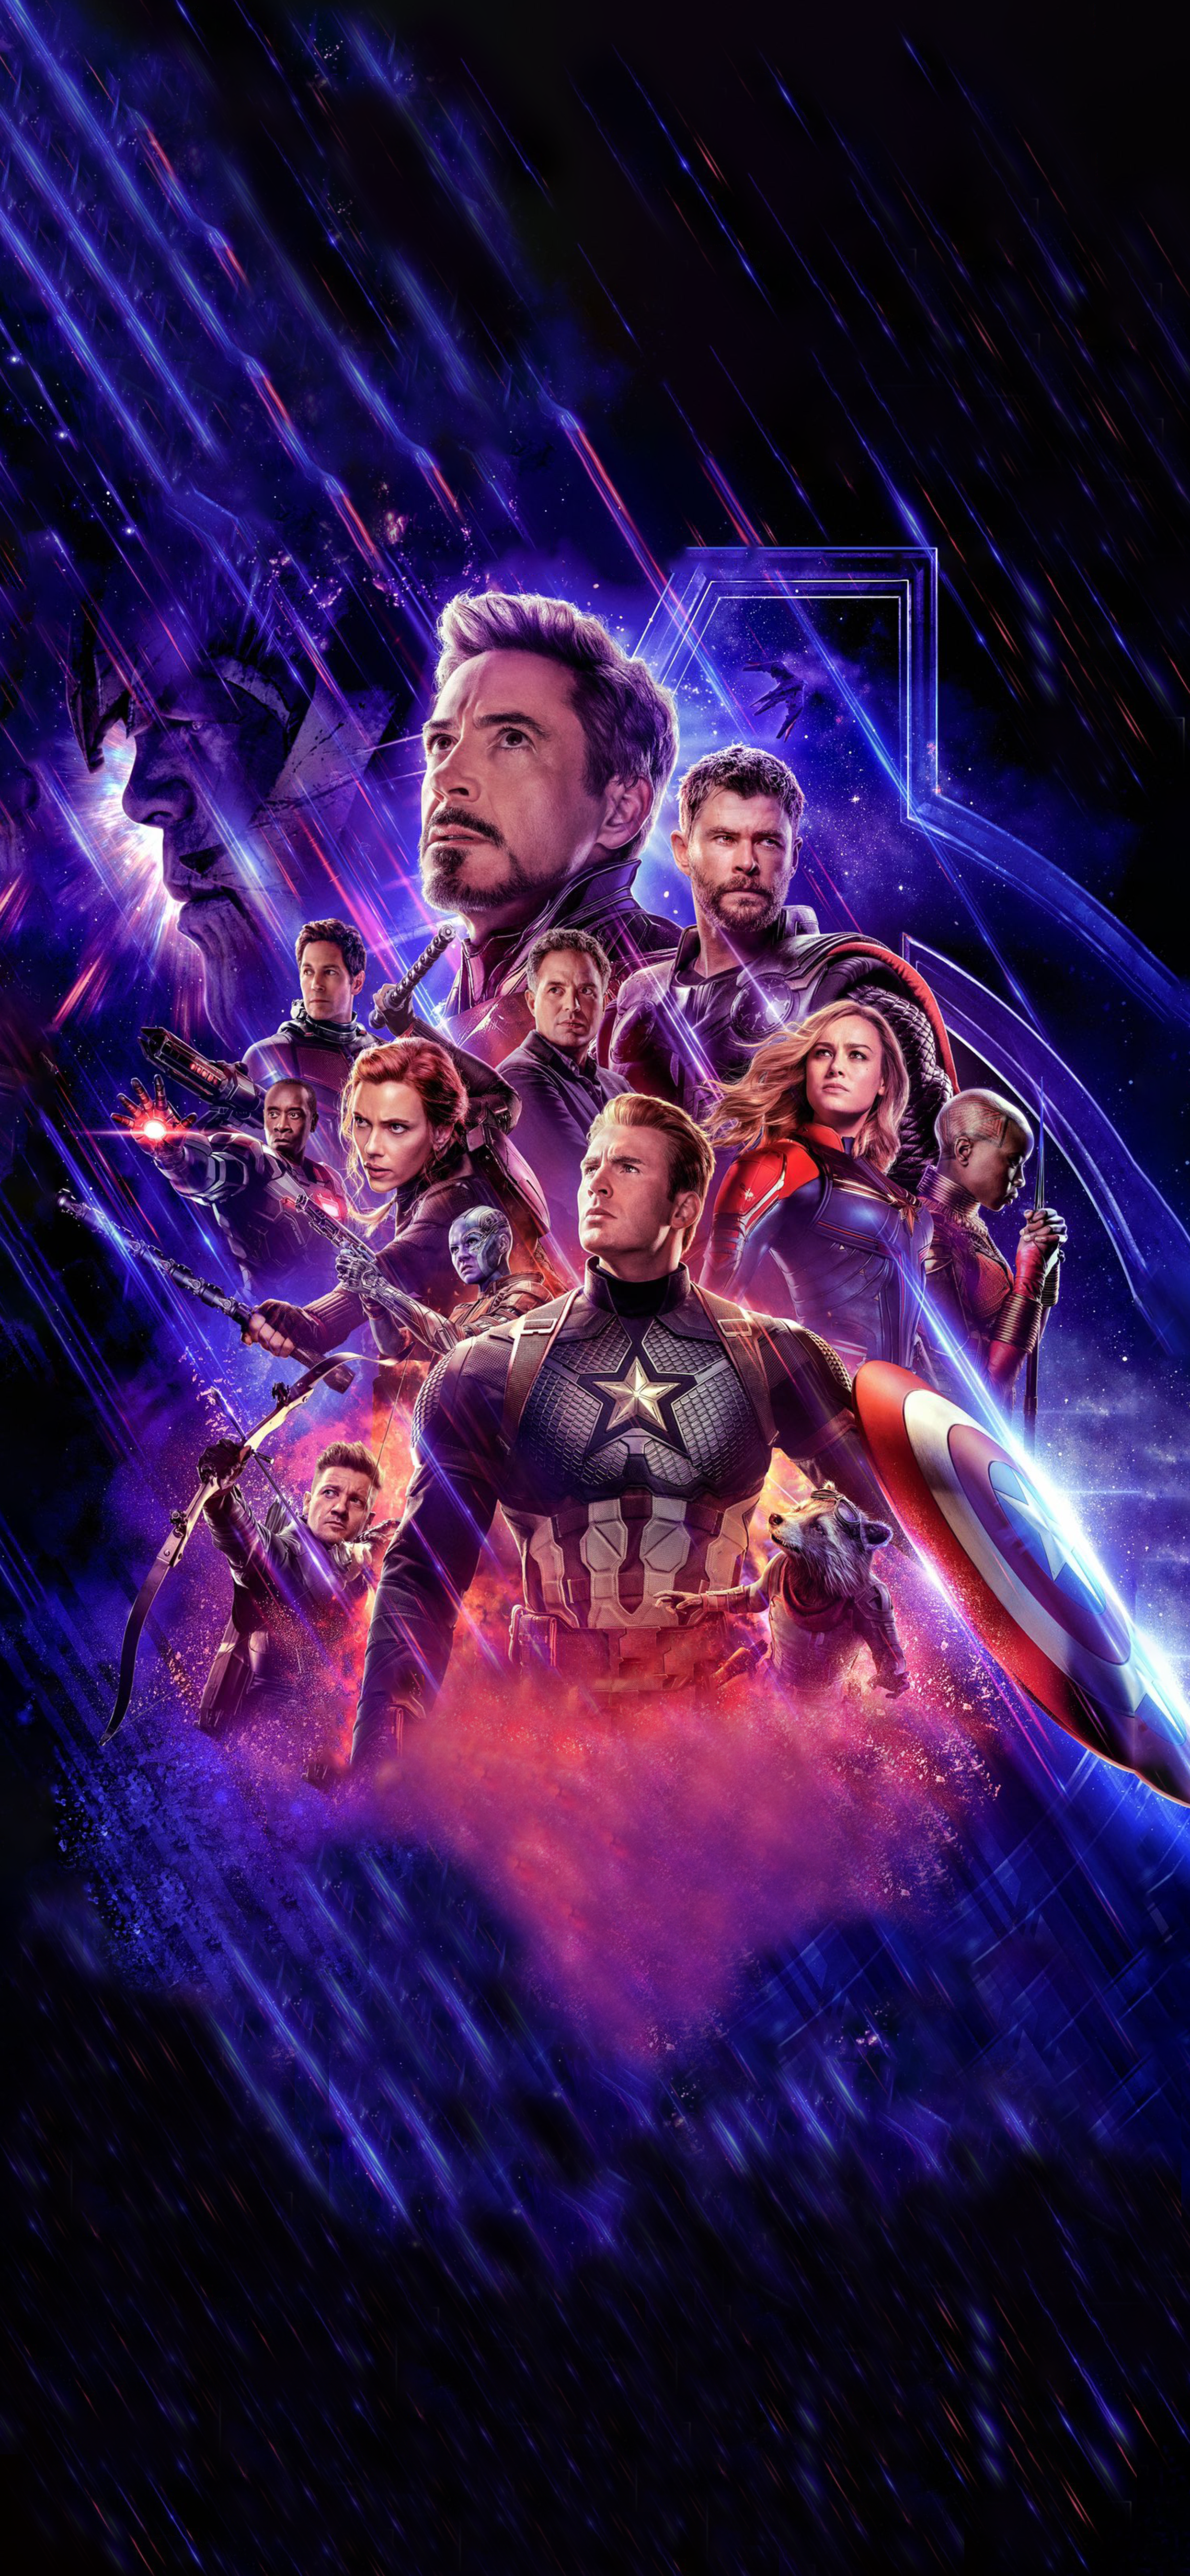 Avengers: Endgame Textless Phone Wallpaper. Avengers poster, Marvel movie posters, Marvel posters